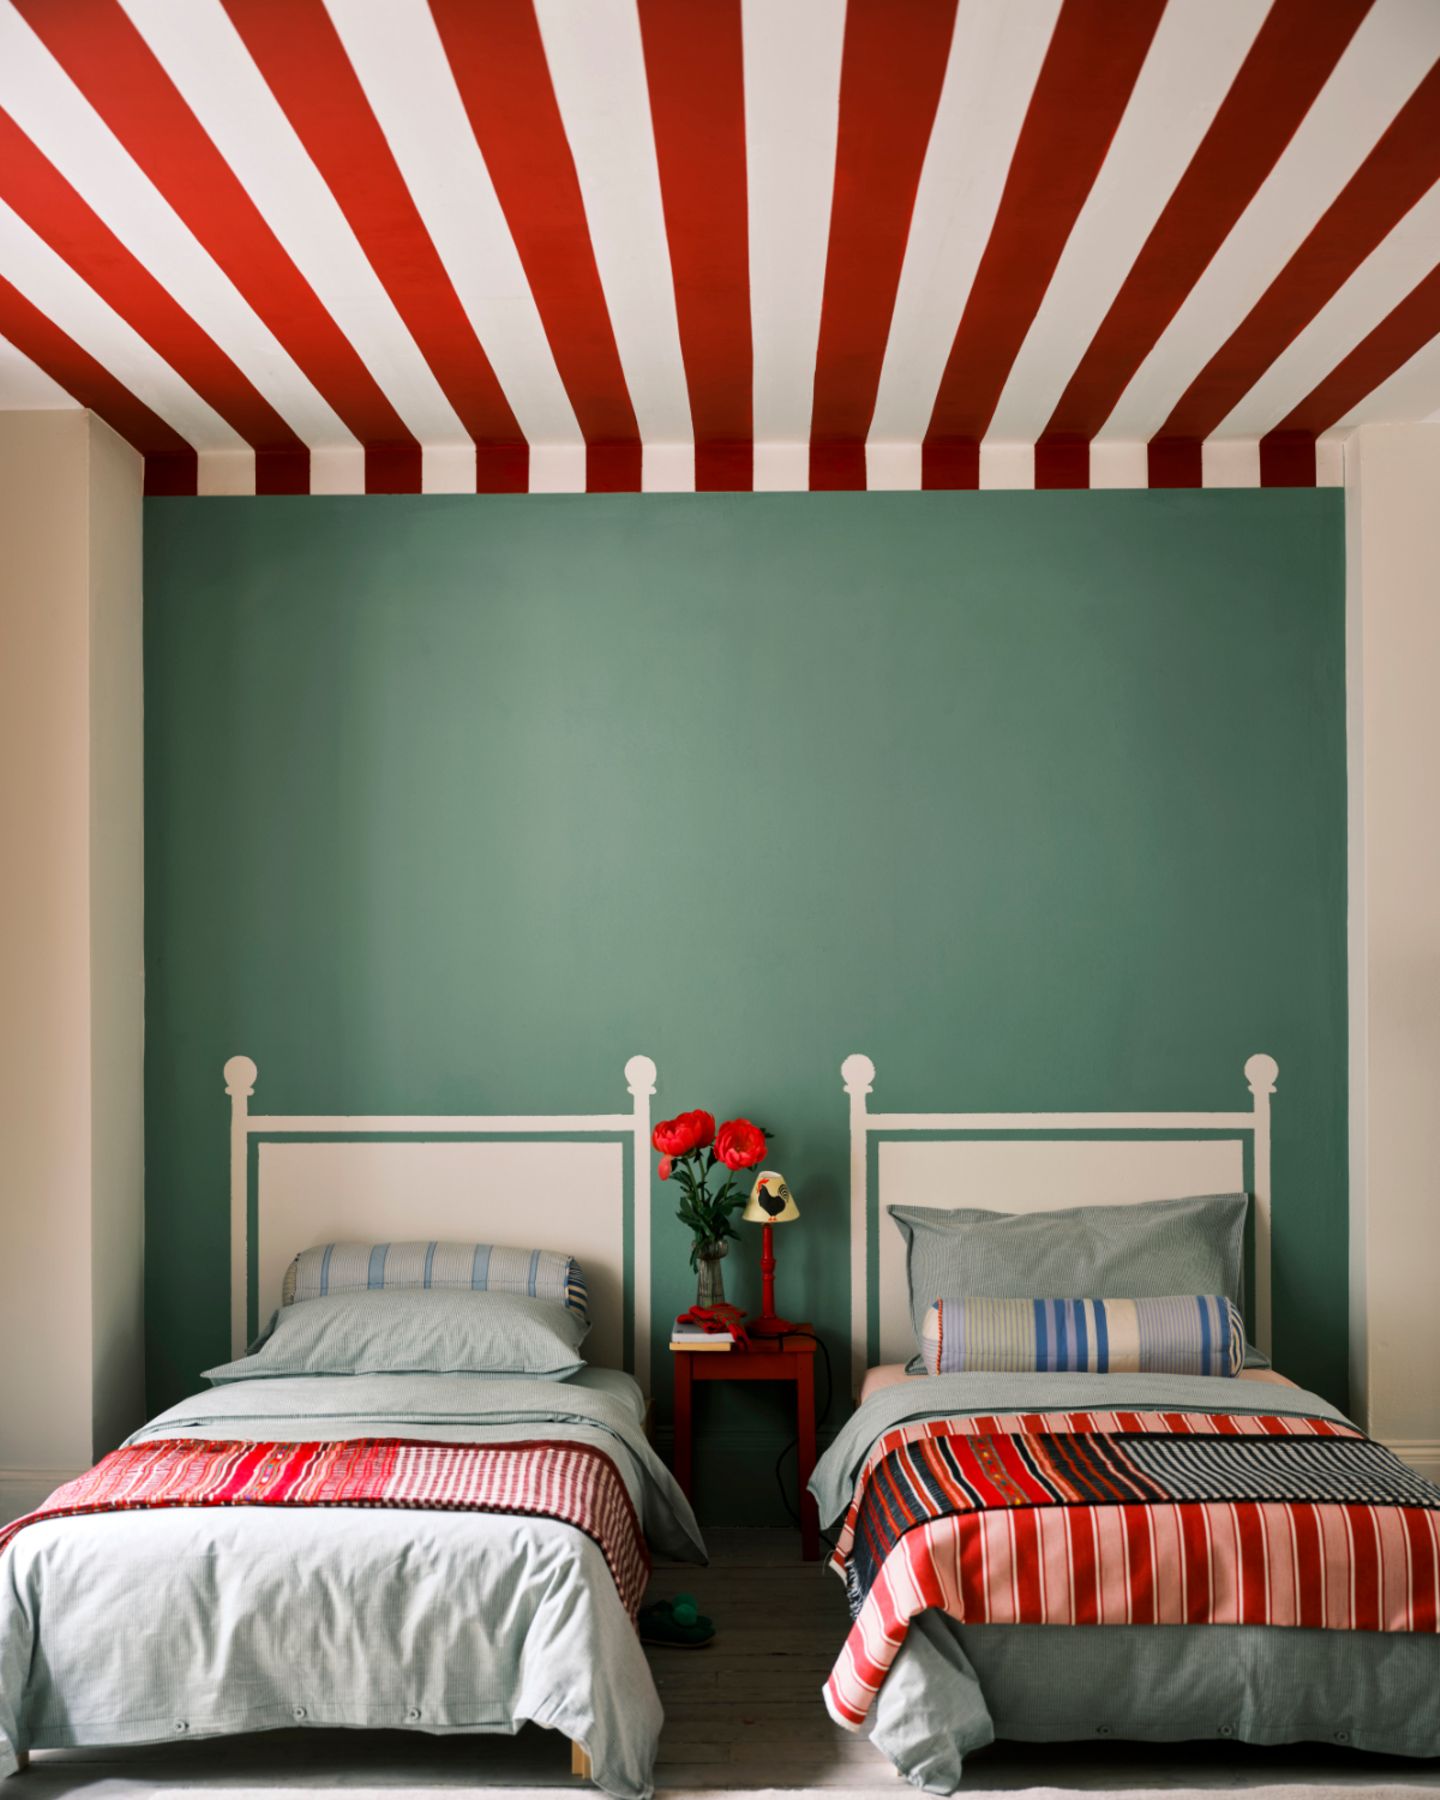 Kinderzimmer mit zwei Einzelbetten, grüner Rückwand und einer rot-weiß gestreiften Decke